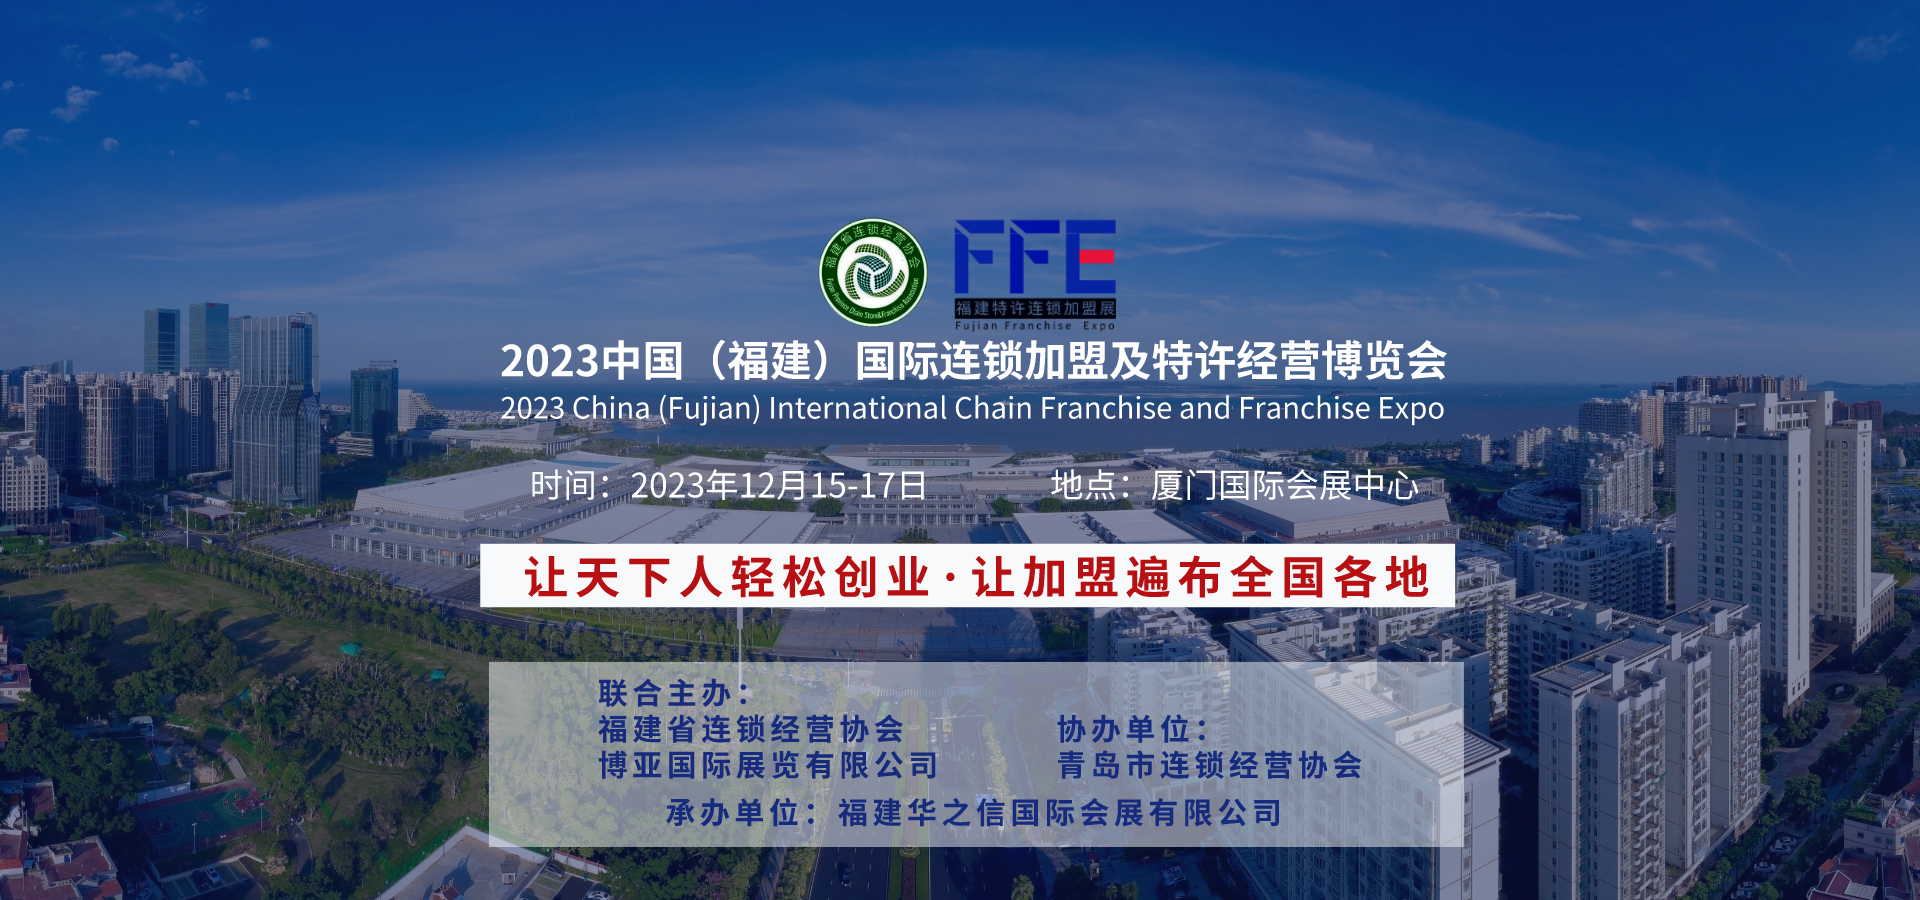 【参展邀请】2023中国（福建）国际连锁加盟及特许经营博览会